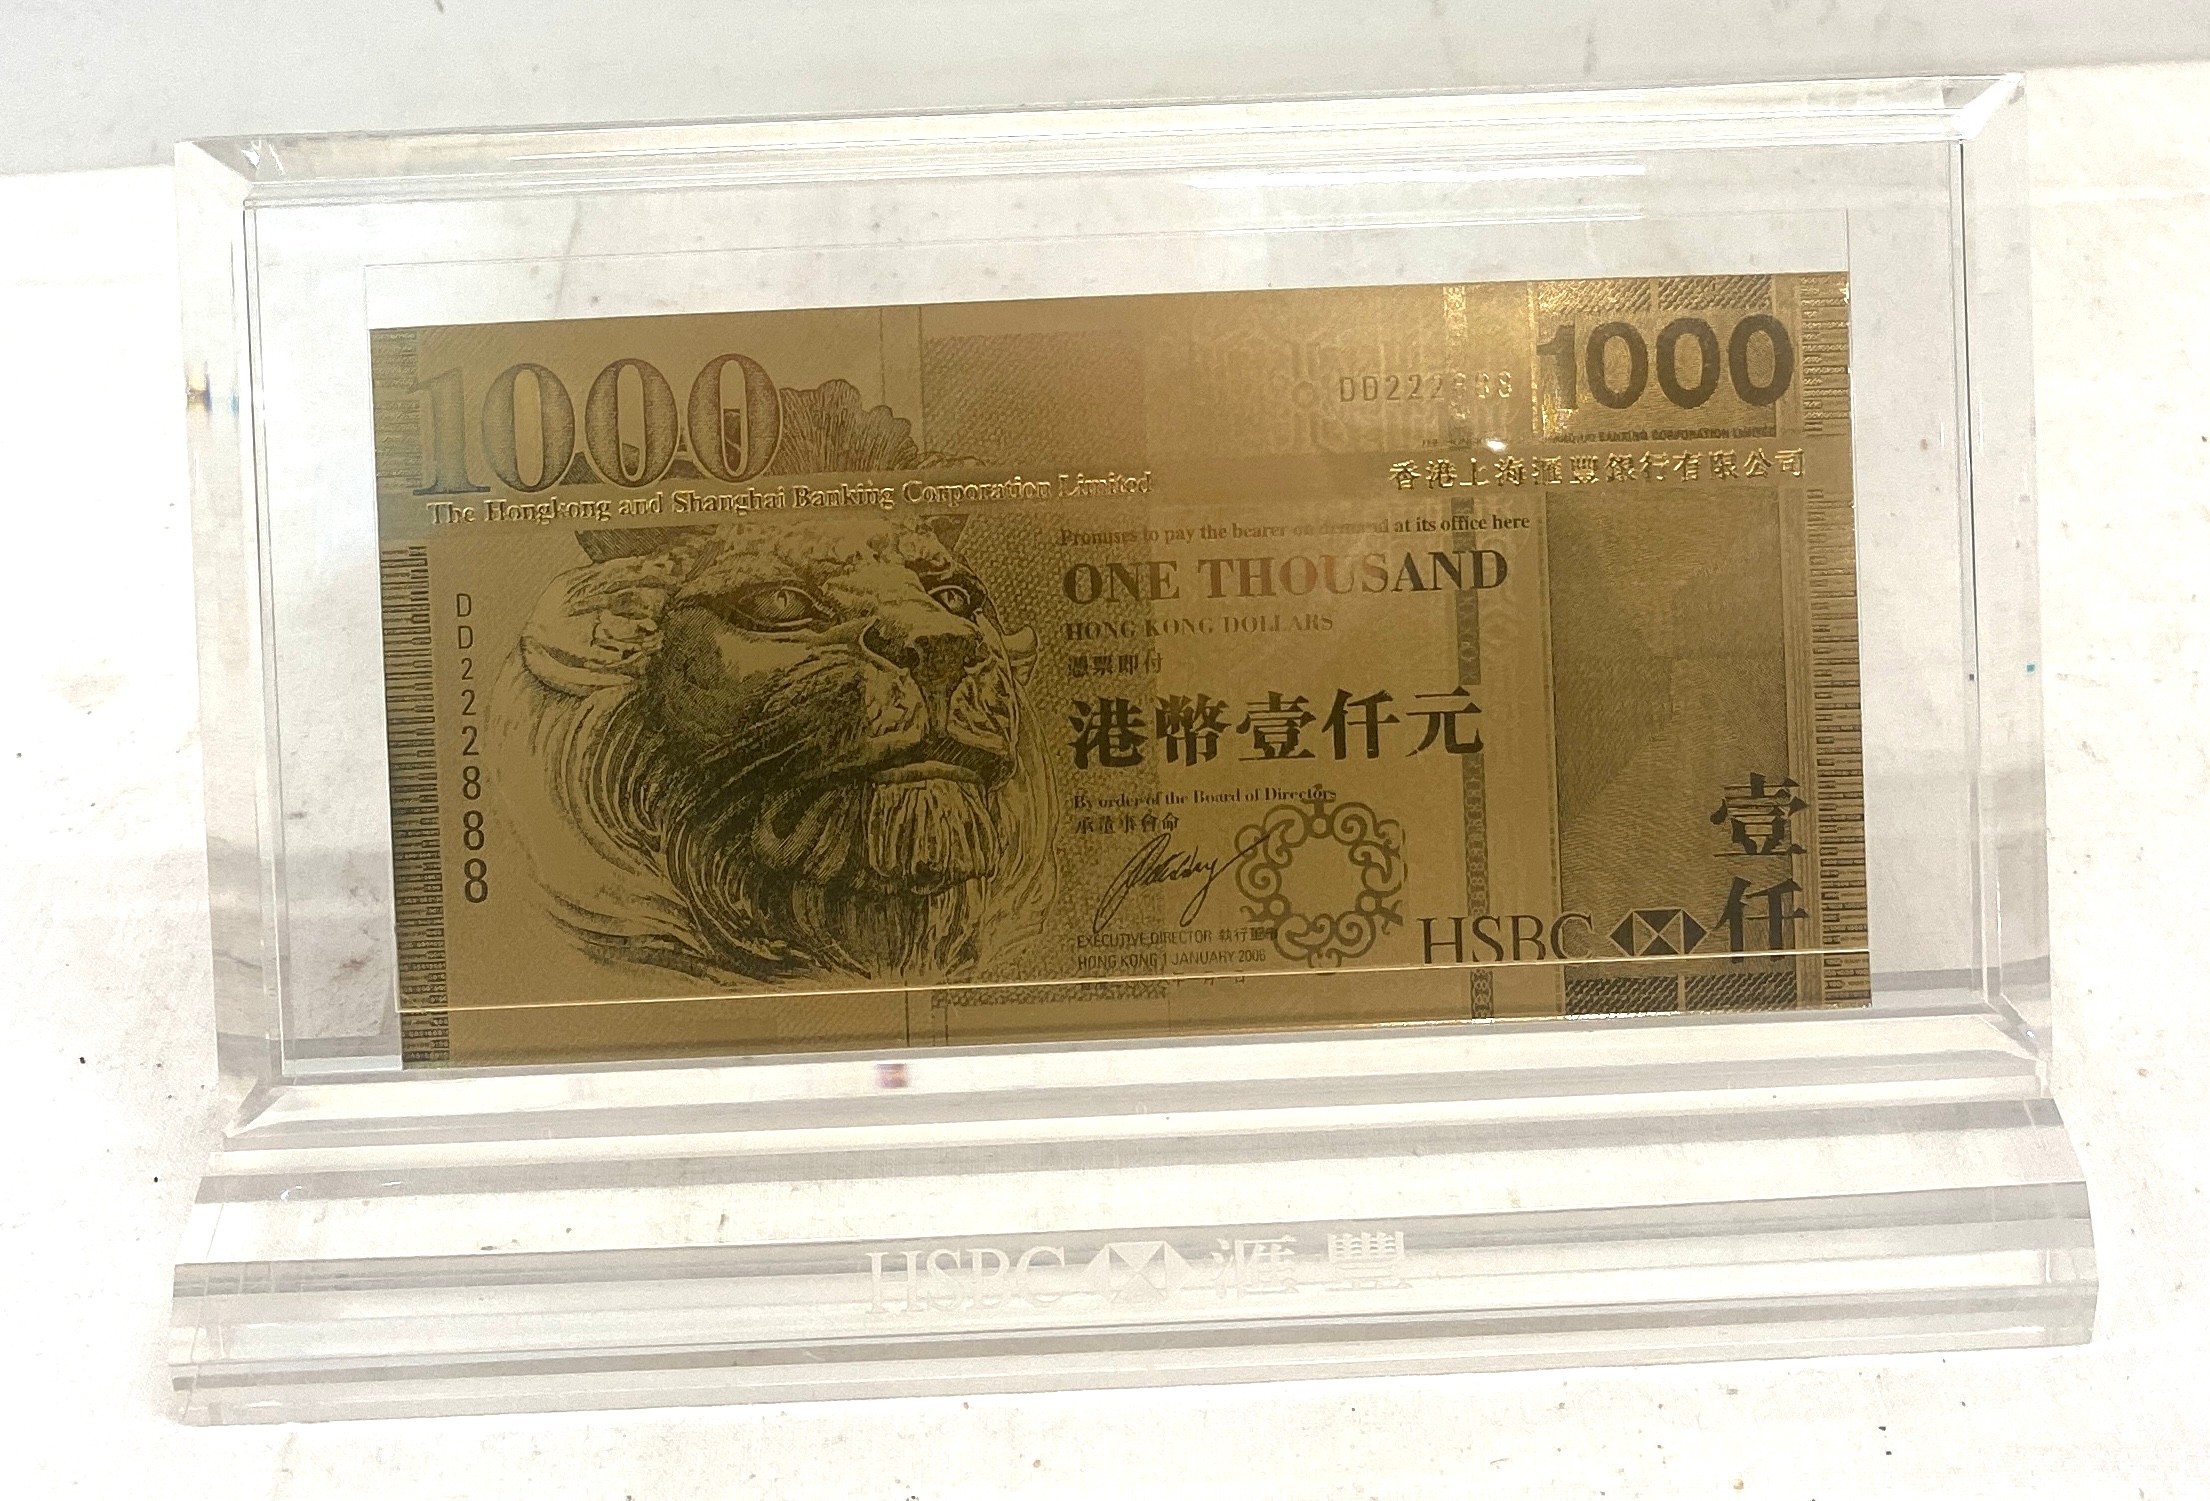 Framed King Kong gold leaf 1000 dollar HSBC bank note dd222888 - Image 2 of 5